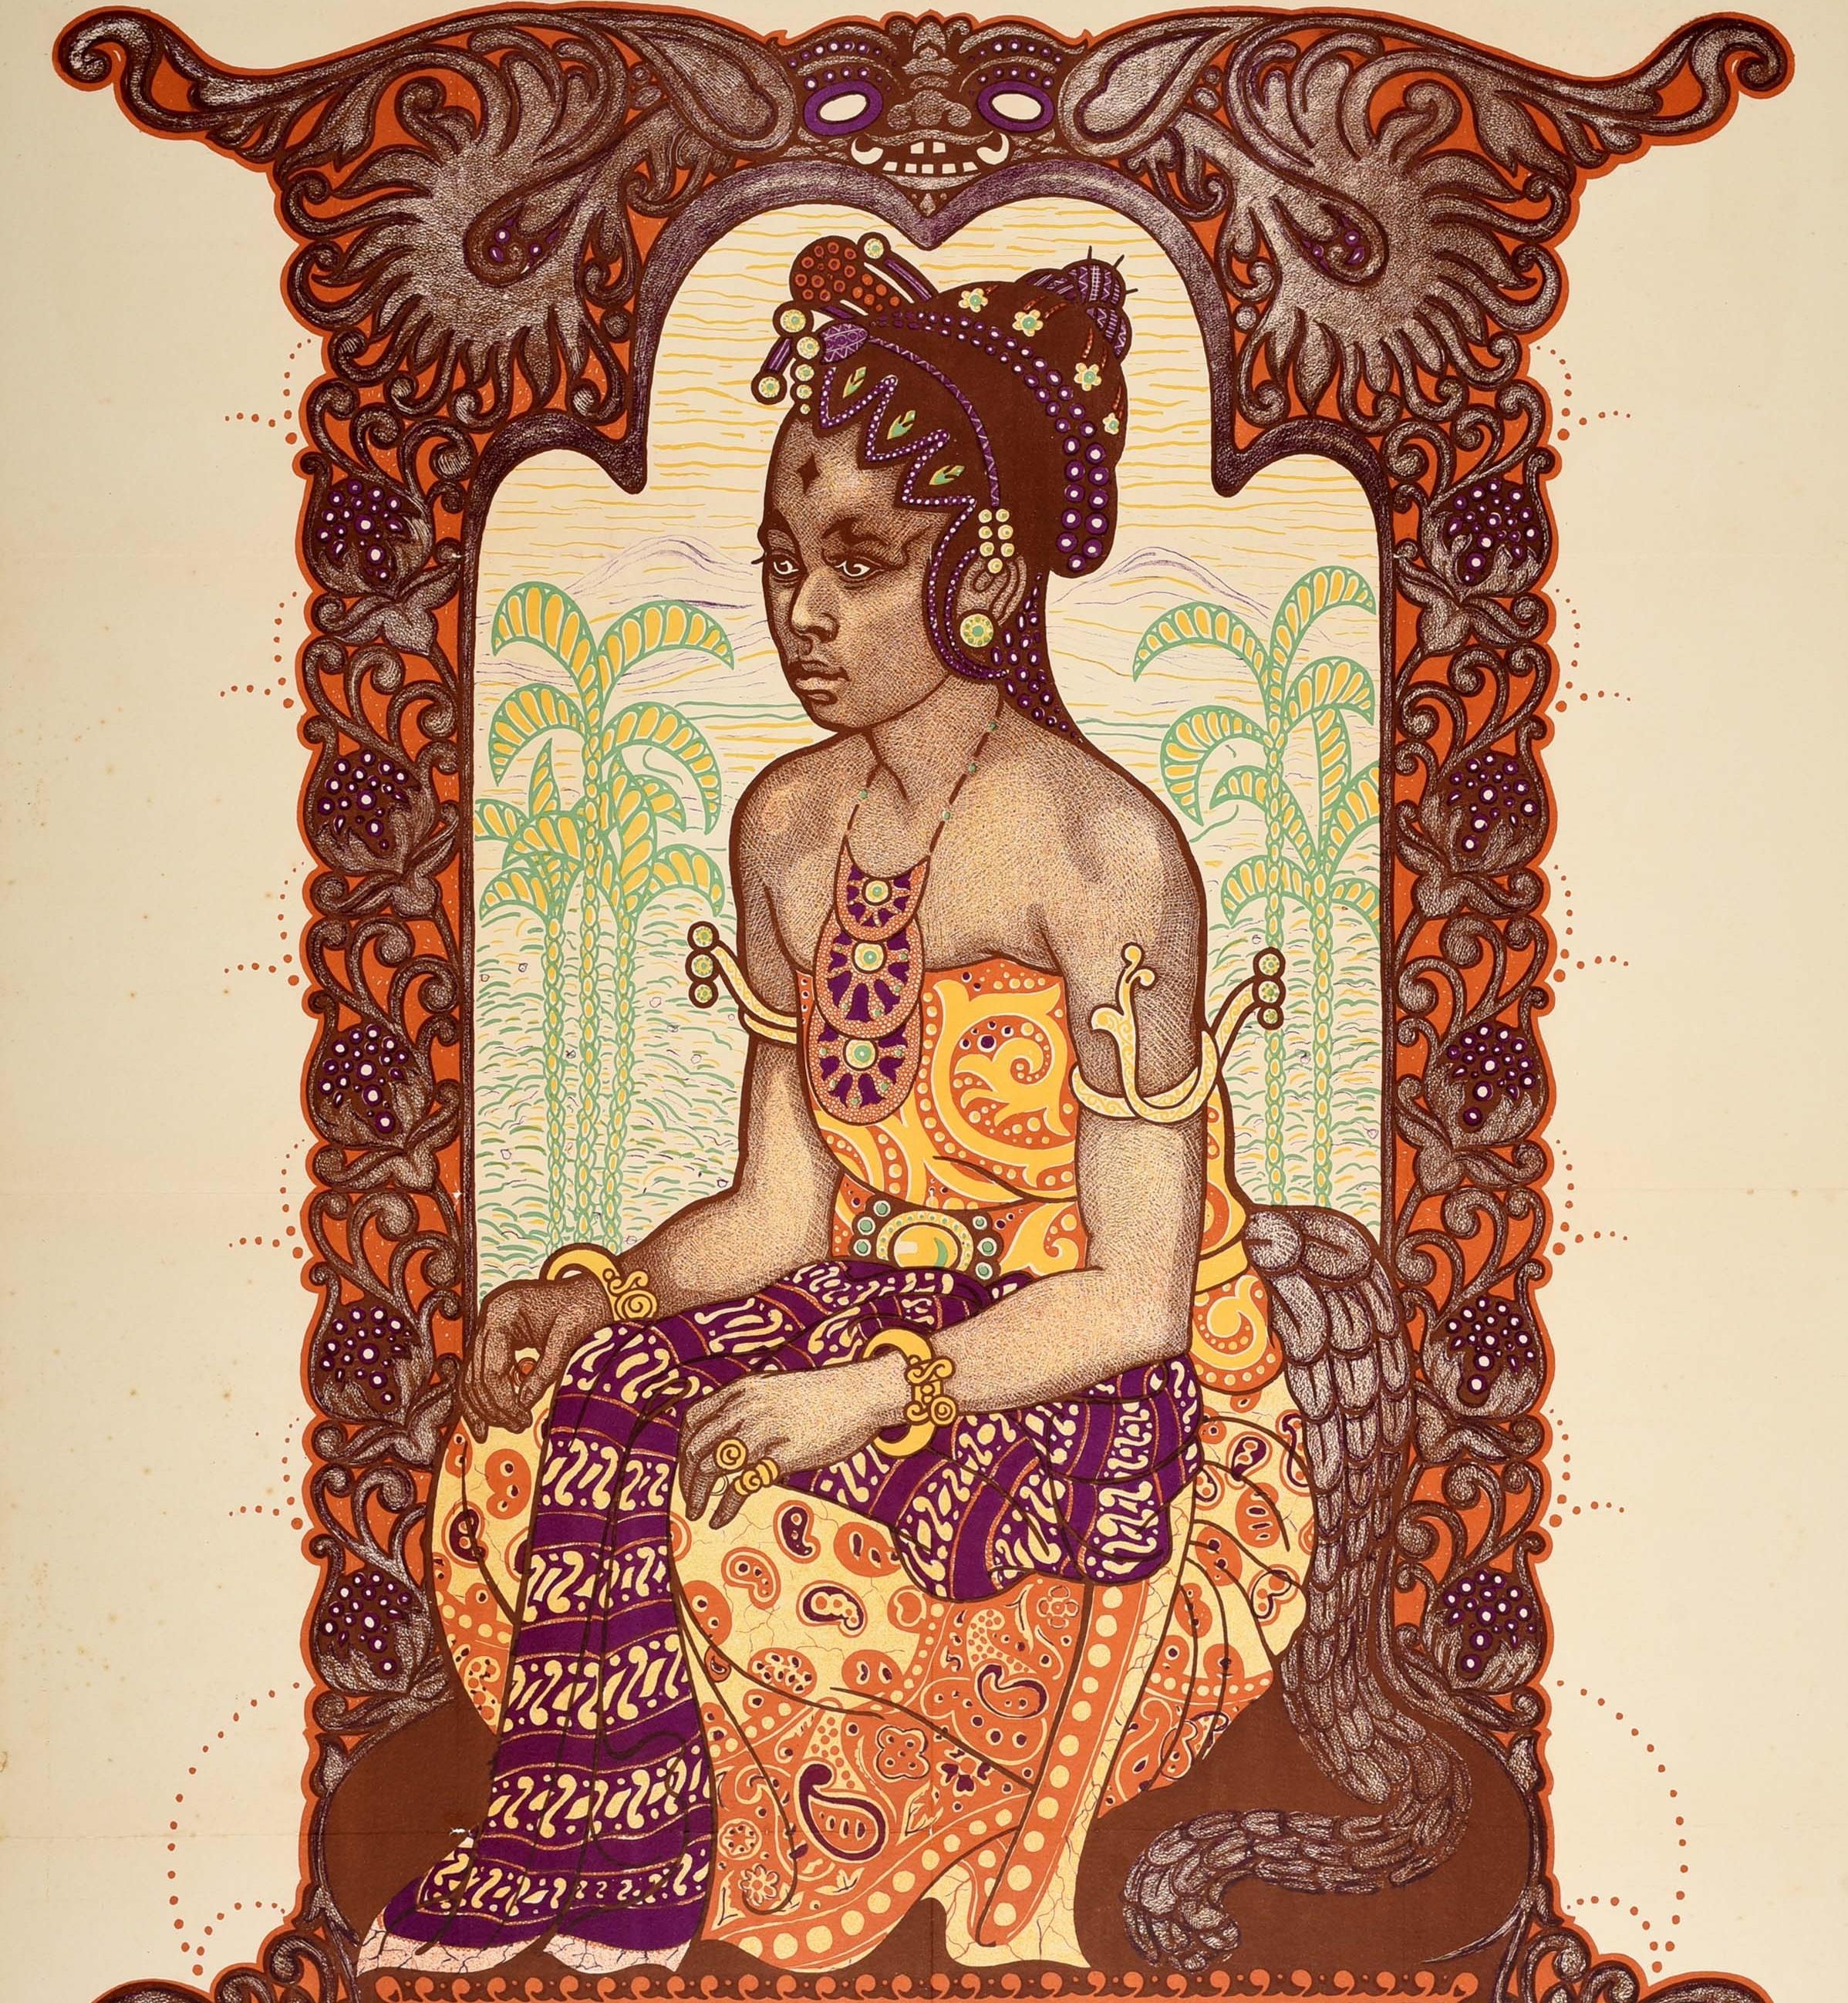 Originales antikes Werbeplakat für die Kolonialausstellung in Semarang 1914 auf Java mit einem wunderschönen Bild einer Dame in traditioneller Batikkleidung mit Schmuck und Kopfschmuck, die vor Hügeln und Palmen in einem dekorativen Rahmen sitzt,